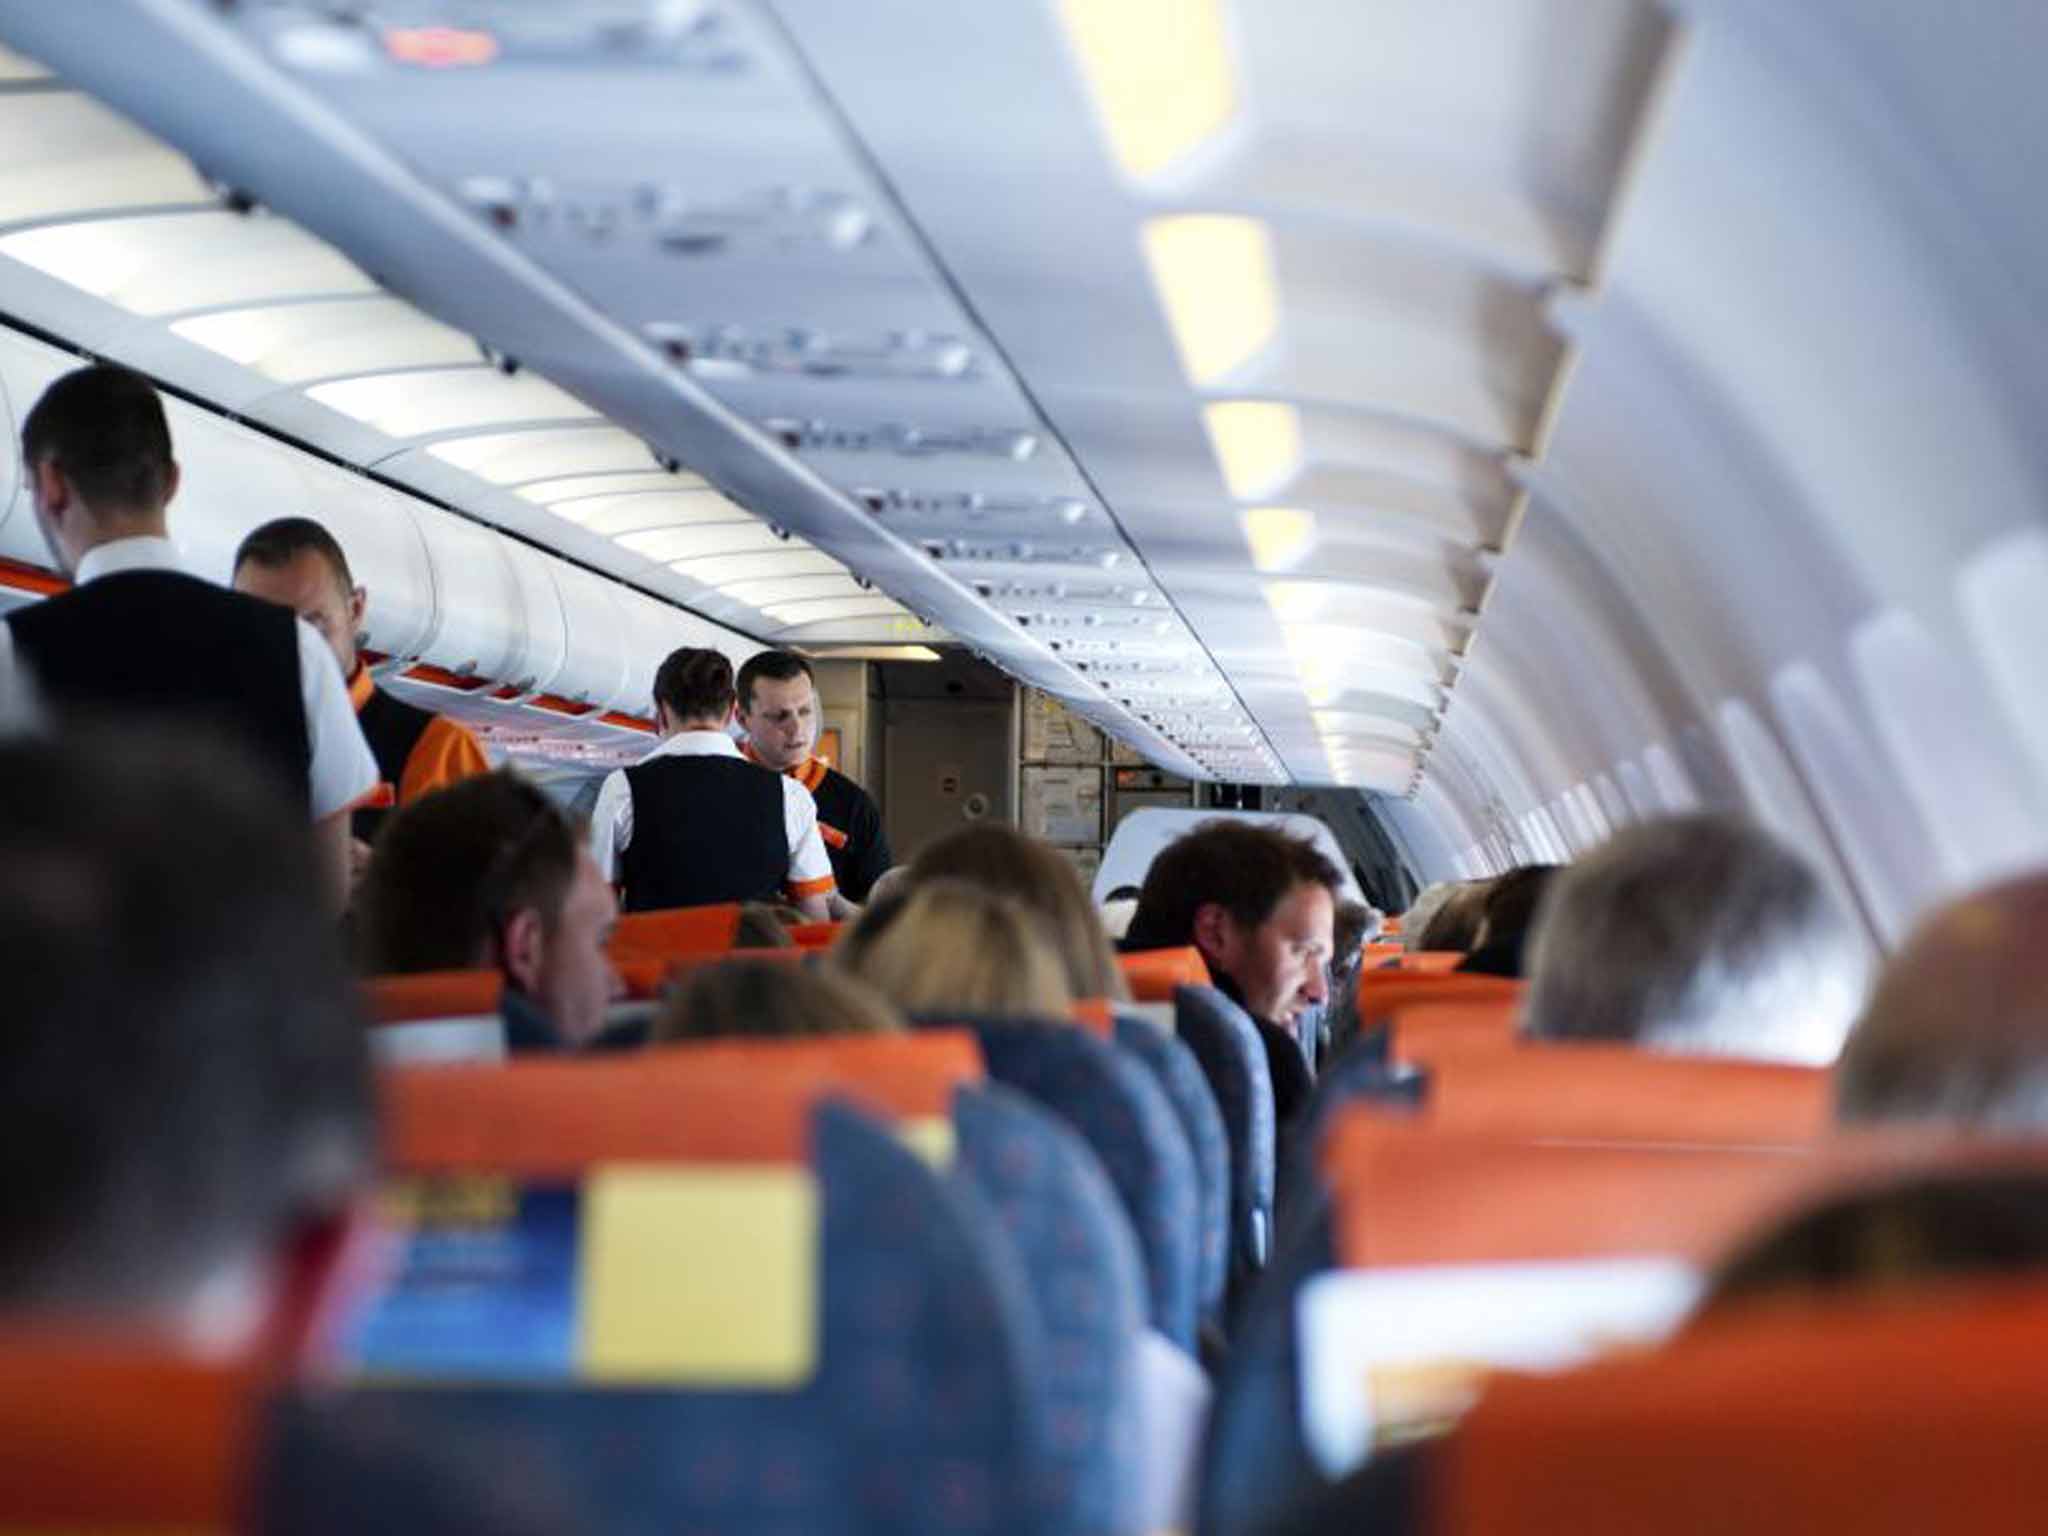 Σκηνές τρόμου σε πτήση προς Λάρνακα - Φώναζαν από τον πόνο οι επιβάτες 